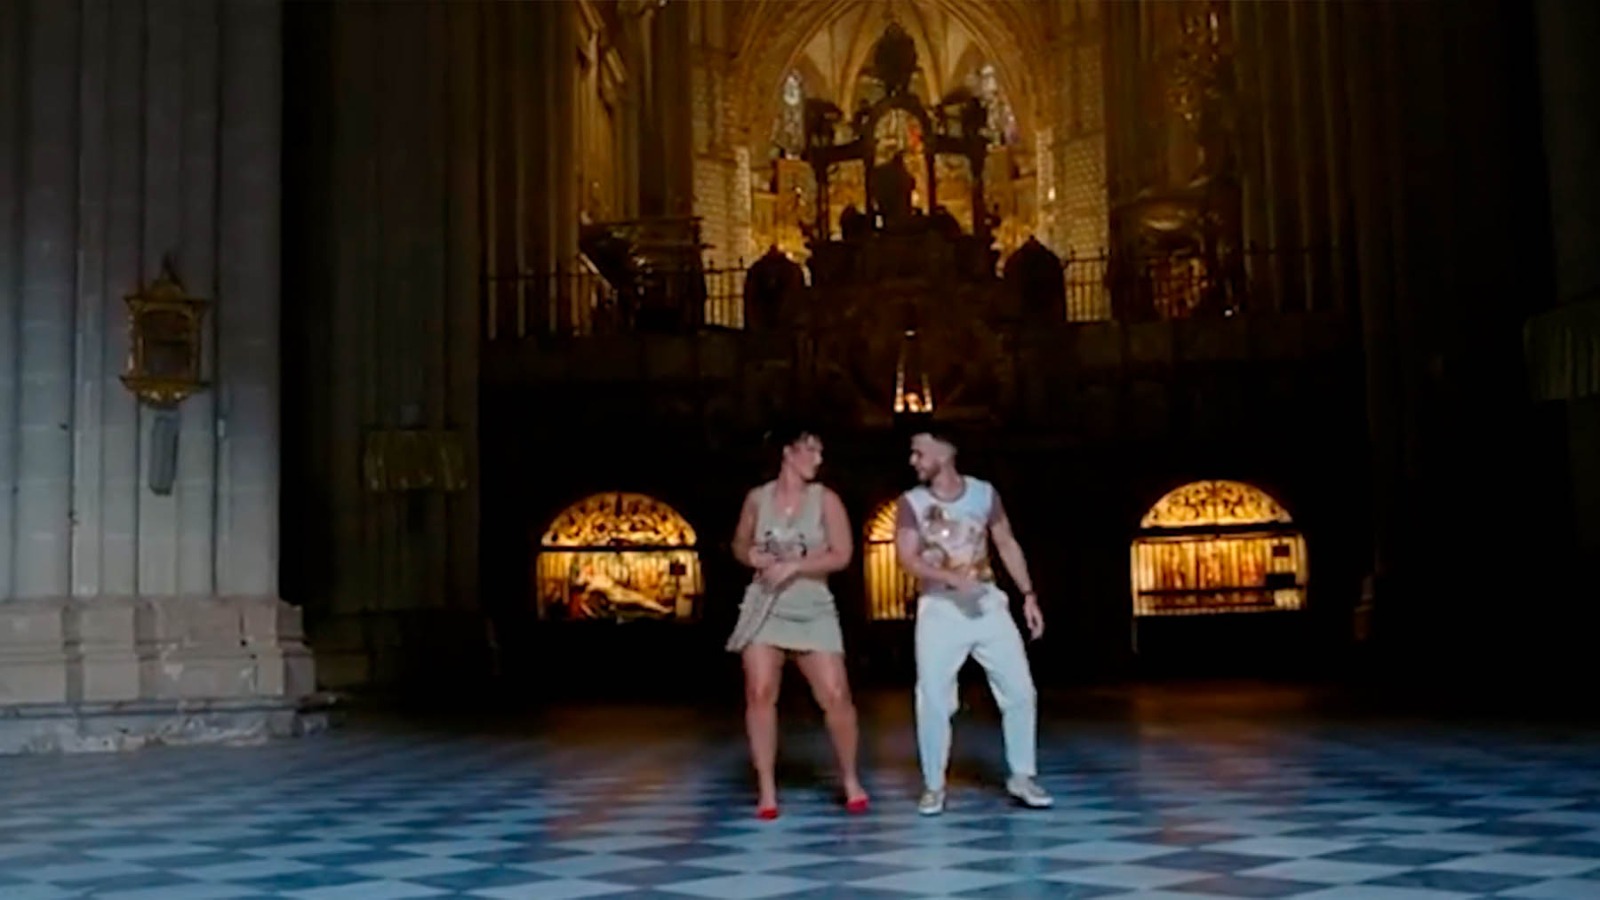 Imágenes del videoclip de C. Tangana y Nathy Peluso en la Catedral de Toledo.